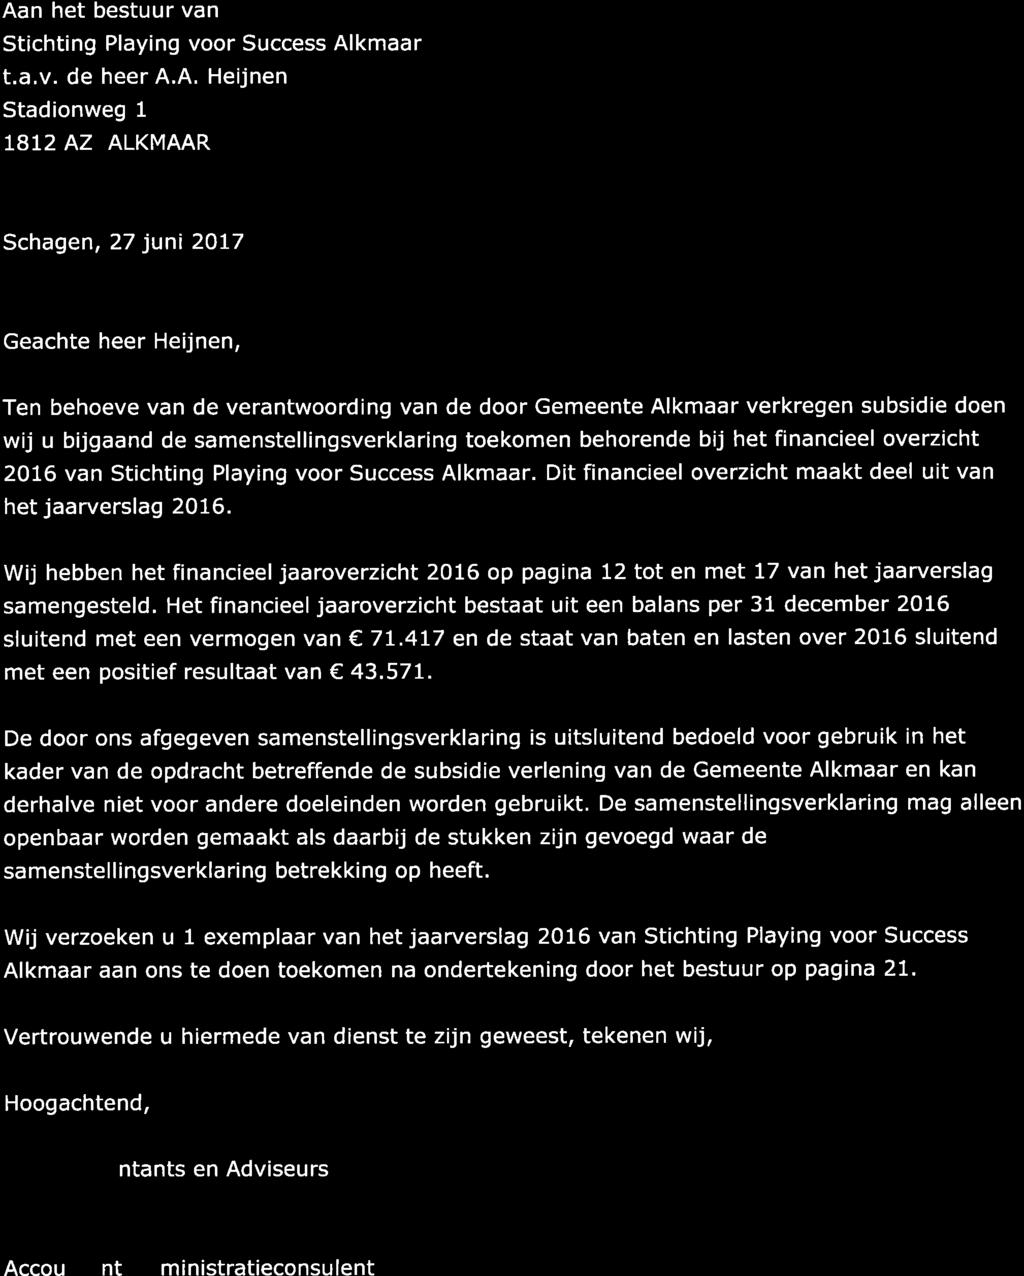 *"tr": Aan het bestuur van Stichting Playing voor Success Alkmaar t.a.v. de heer A.A. Heijnen Stadionweg 1 TBI2 AZ ALKMAAR '"-.